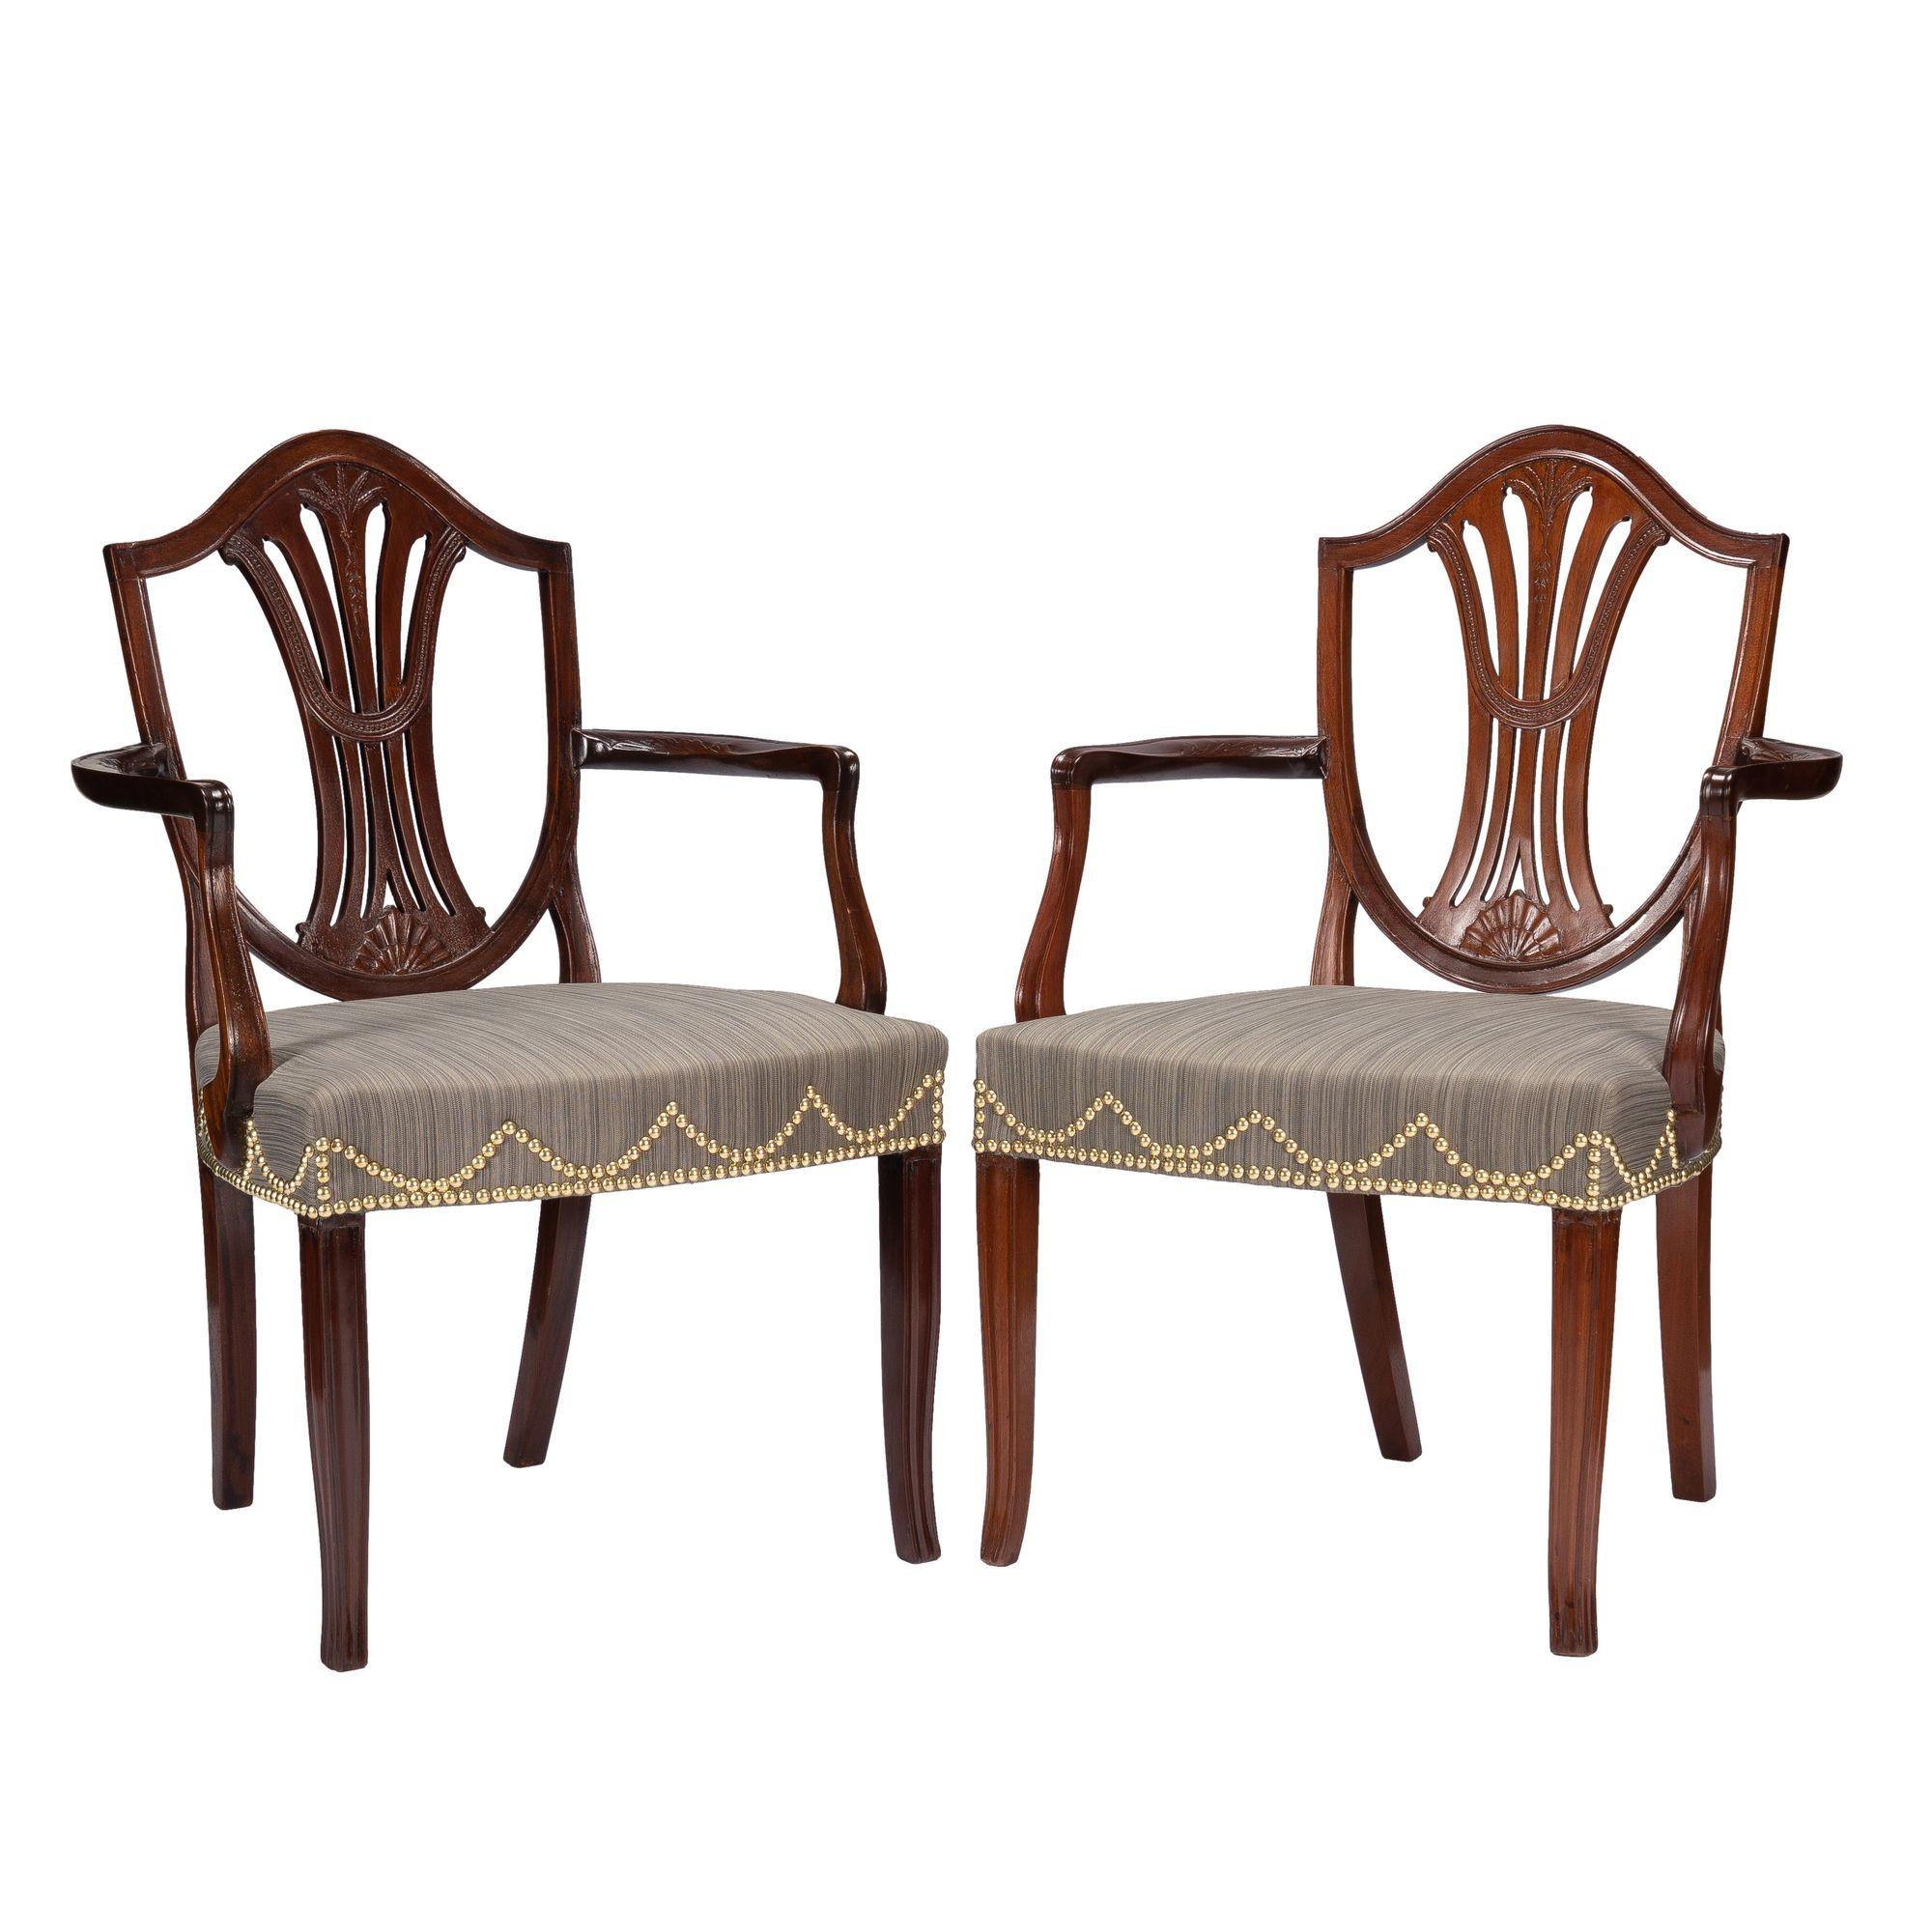 Zwei großzügige englische Sheraton-Mahagoni-Schildsessel mit Rückenlehne und gepolsterten Sitzen über der Schiene. Die Stuhllehnen sind mit einer fein geschnitzten Reisgarbe über einer Glockenblume in der Mitte der vertikalen Rückenlehne verziert.